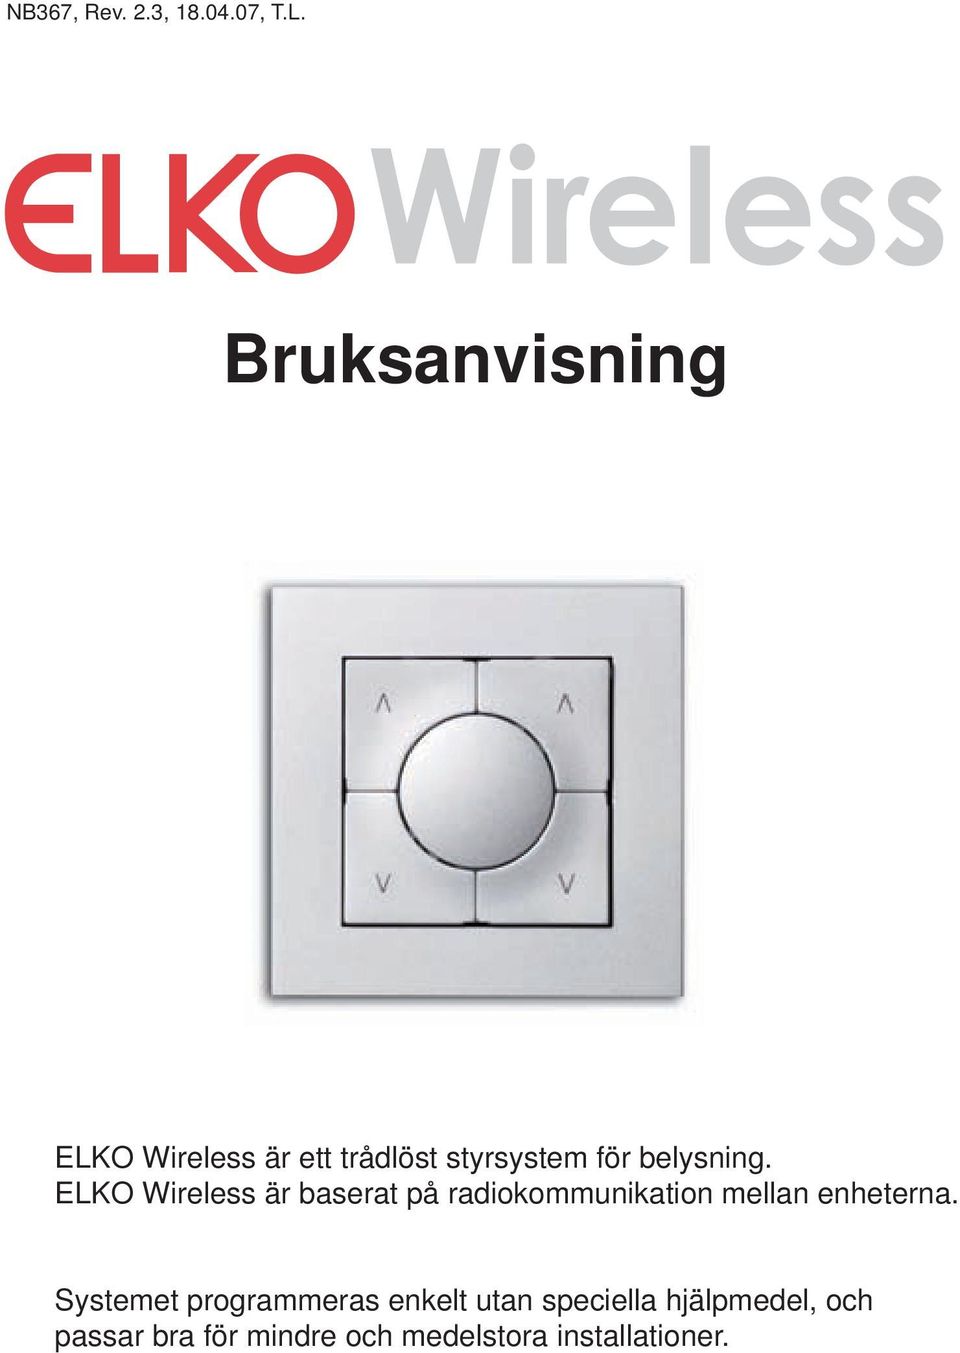 ELKO Wireless är baserat på radiokommunikation mellan enheterna.